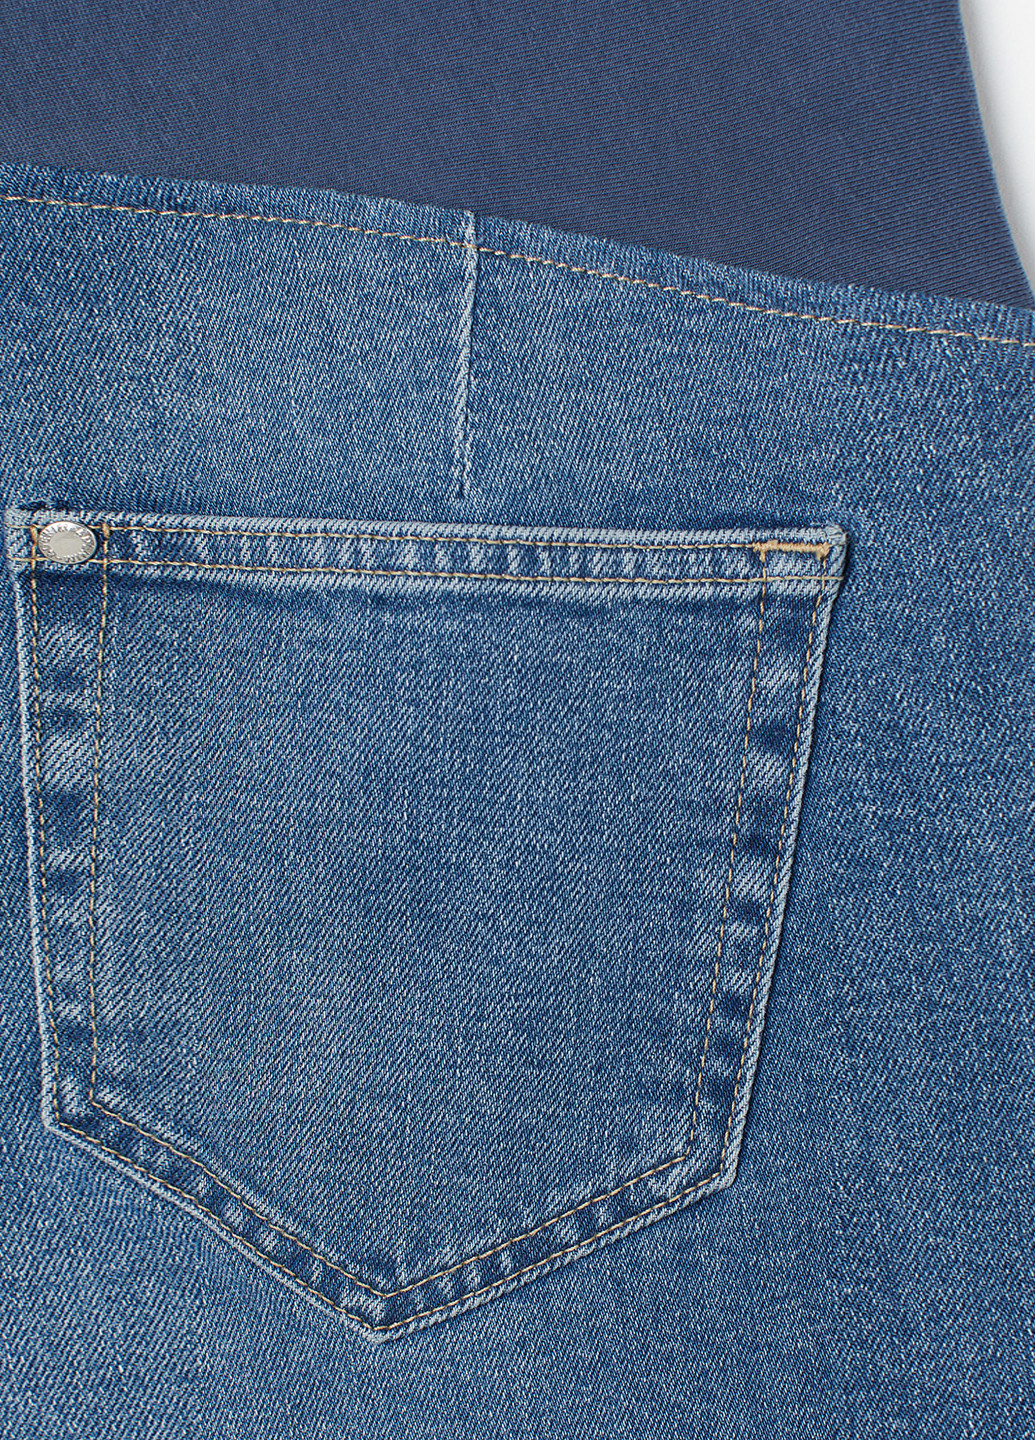 Синие демисезонные клеш джинсы для беременных H&M